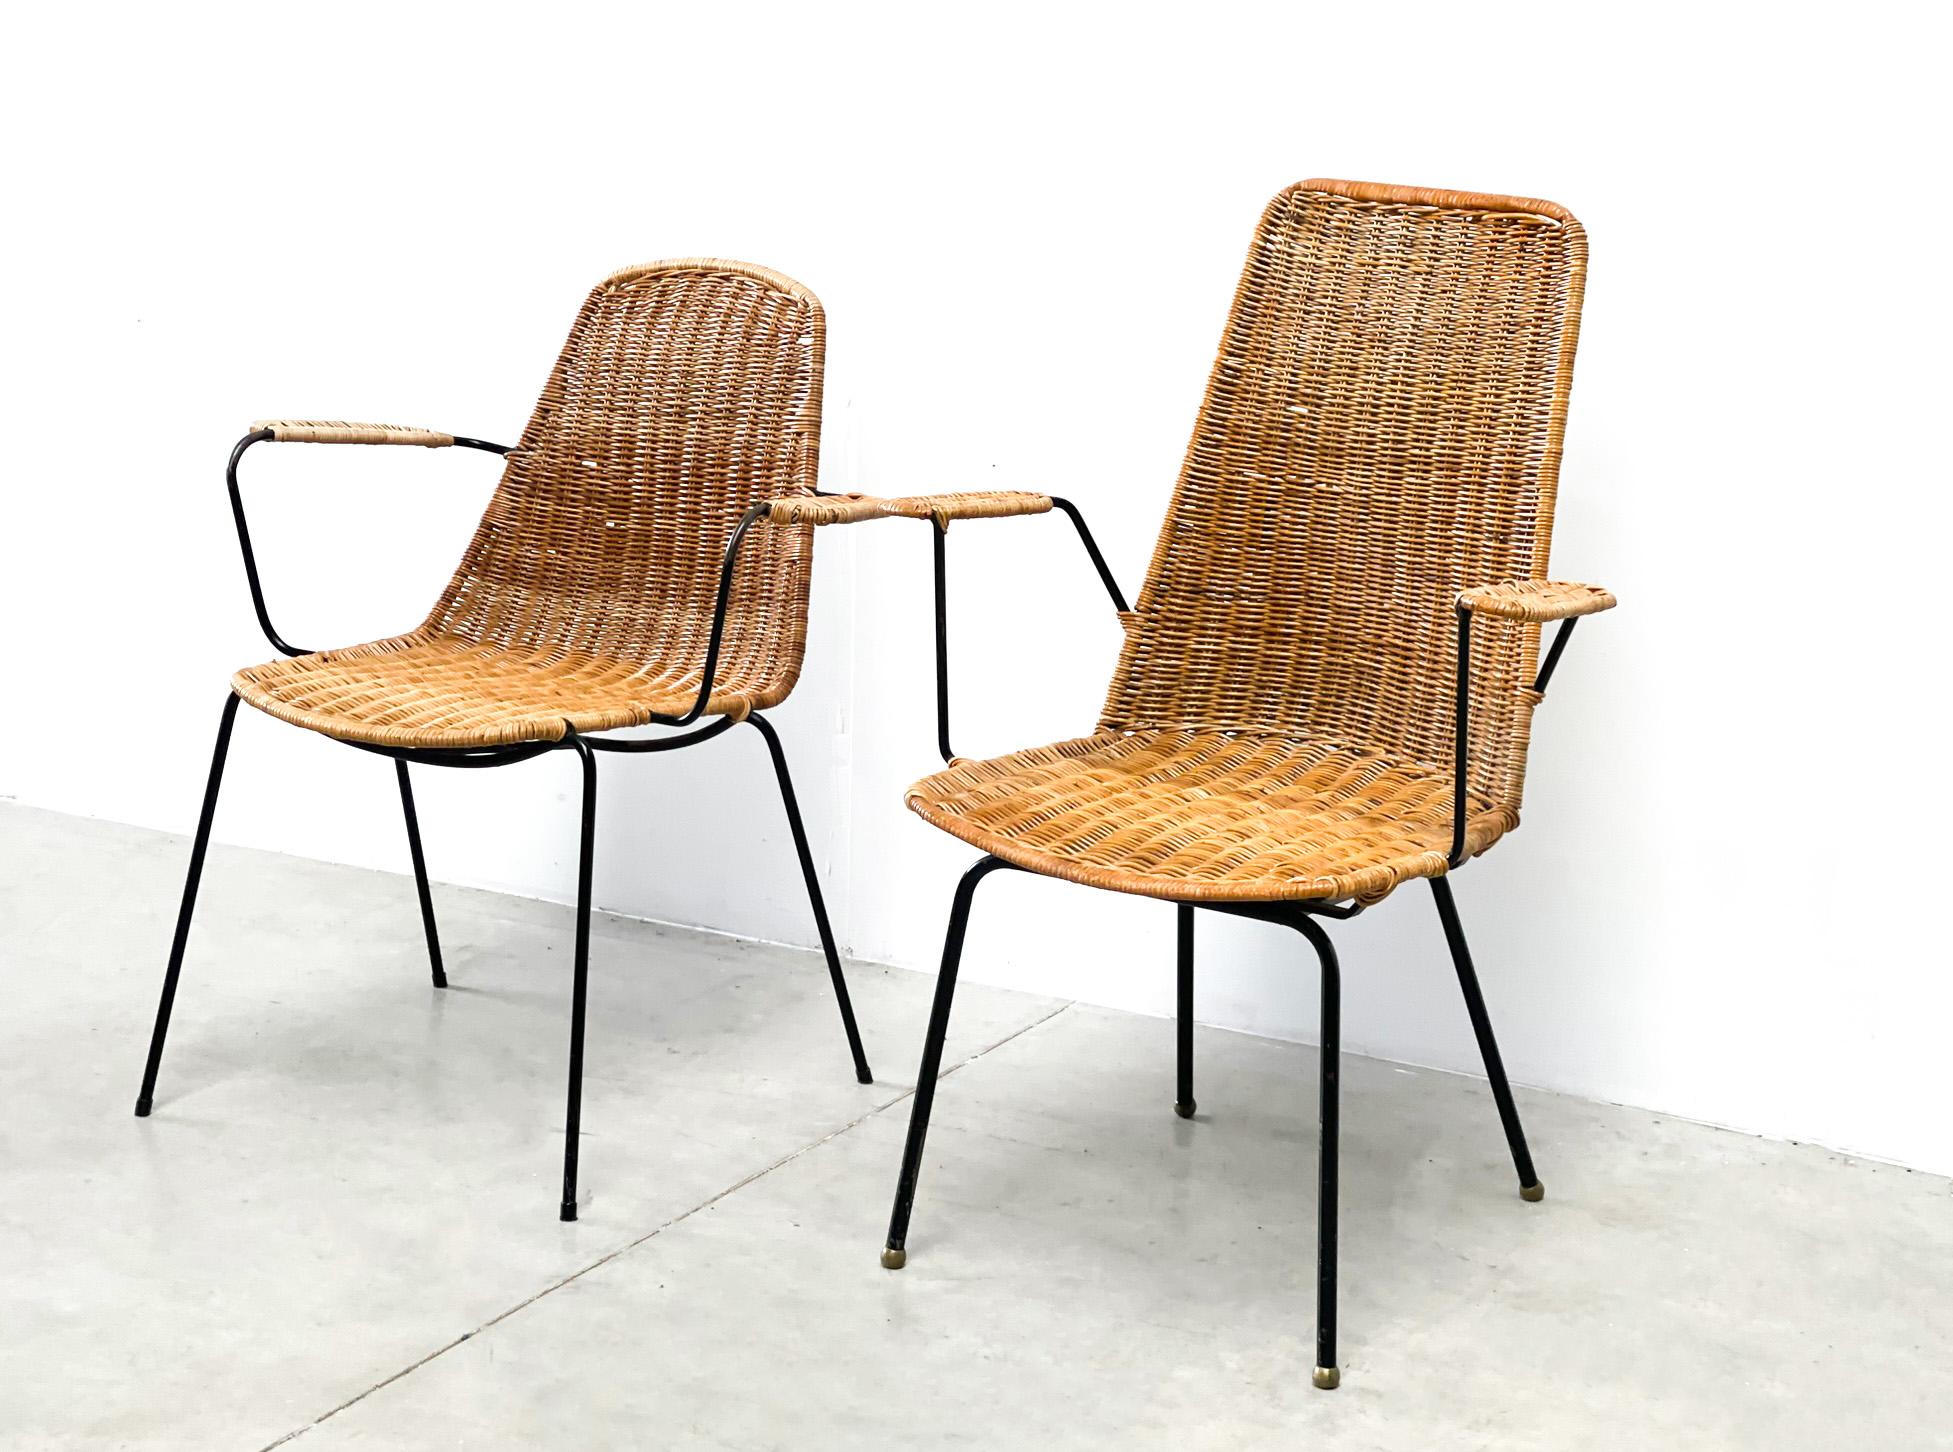 Ensemble de 2 chaises en rotin. Les chaises ont probablement été fabriquées dans les années 60 en France. Elles sont très proches des chaises en rotin du designer italien Gian Franco Legler et du designer néerlandais Dirk Van Sliedregt. Seulement,